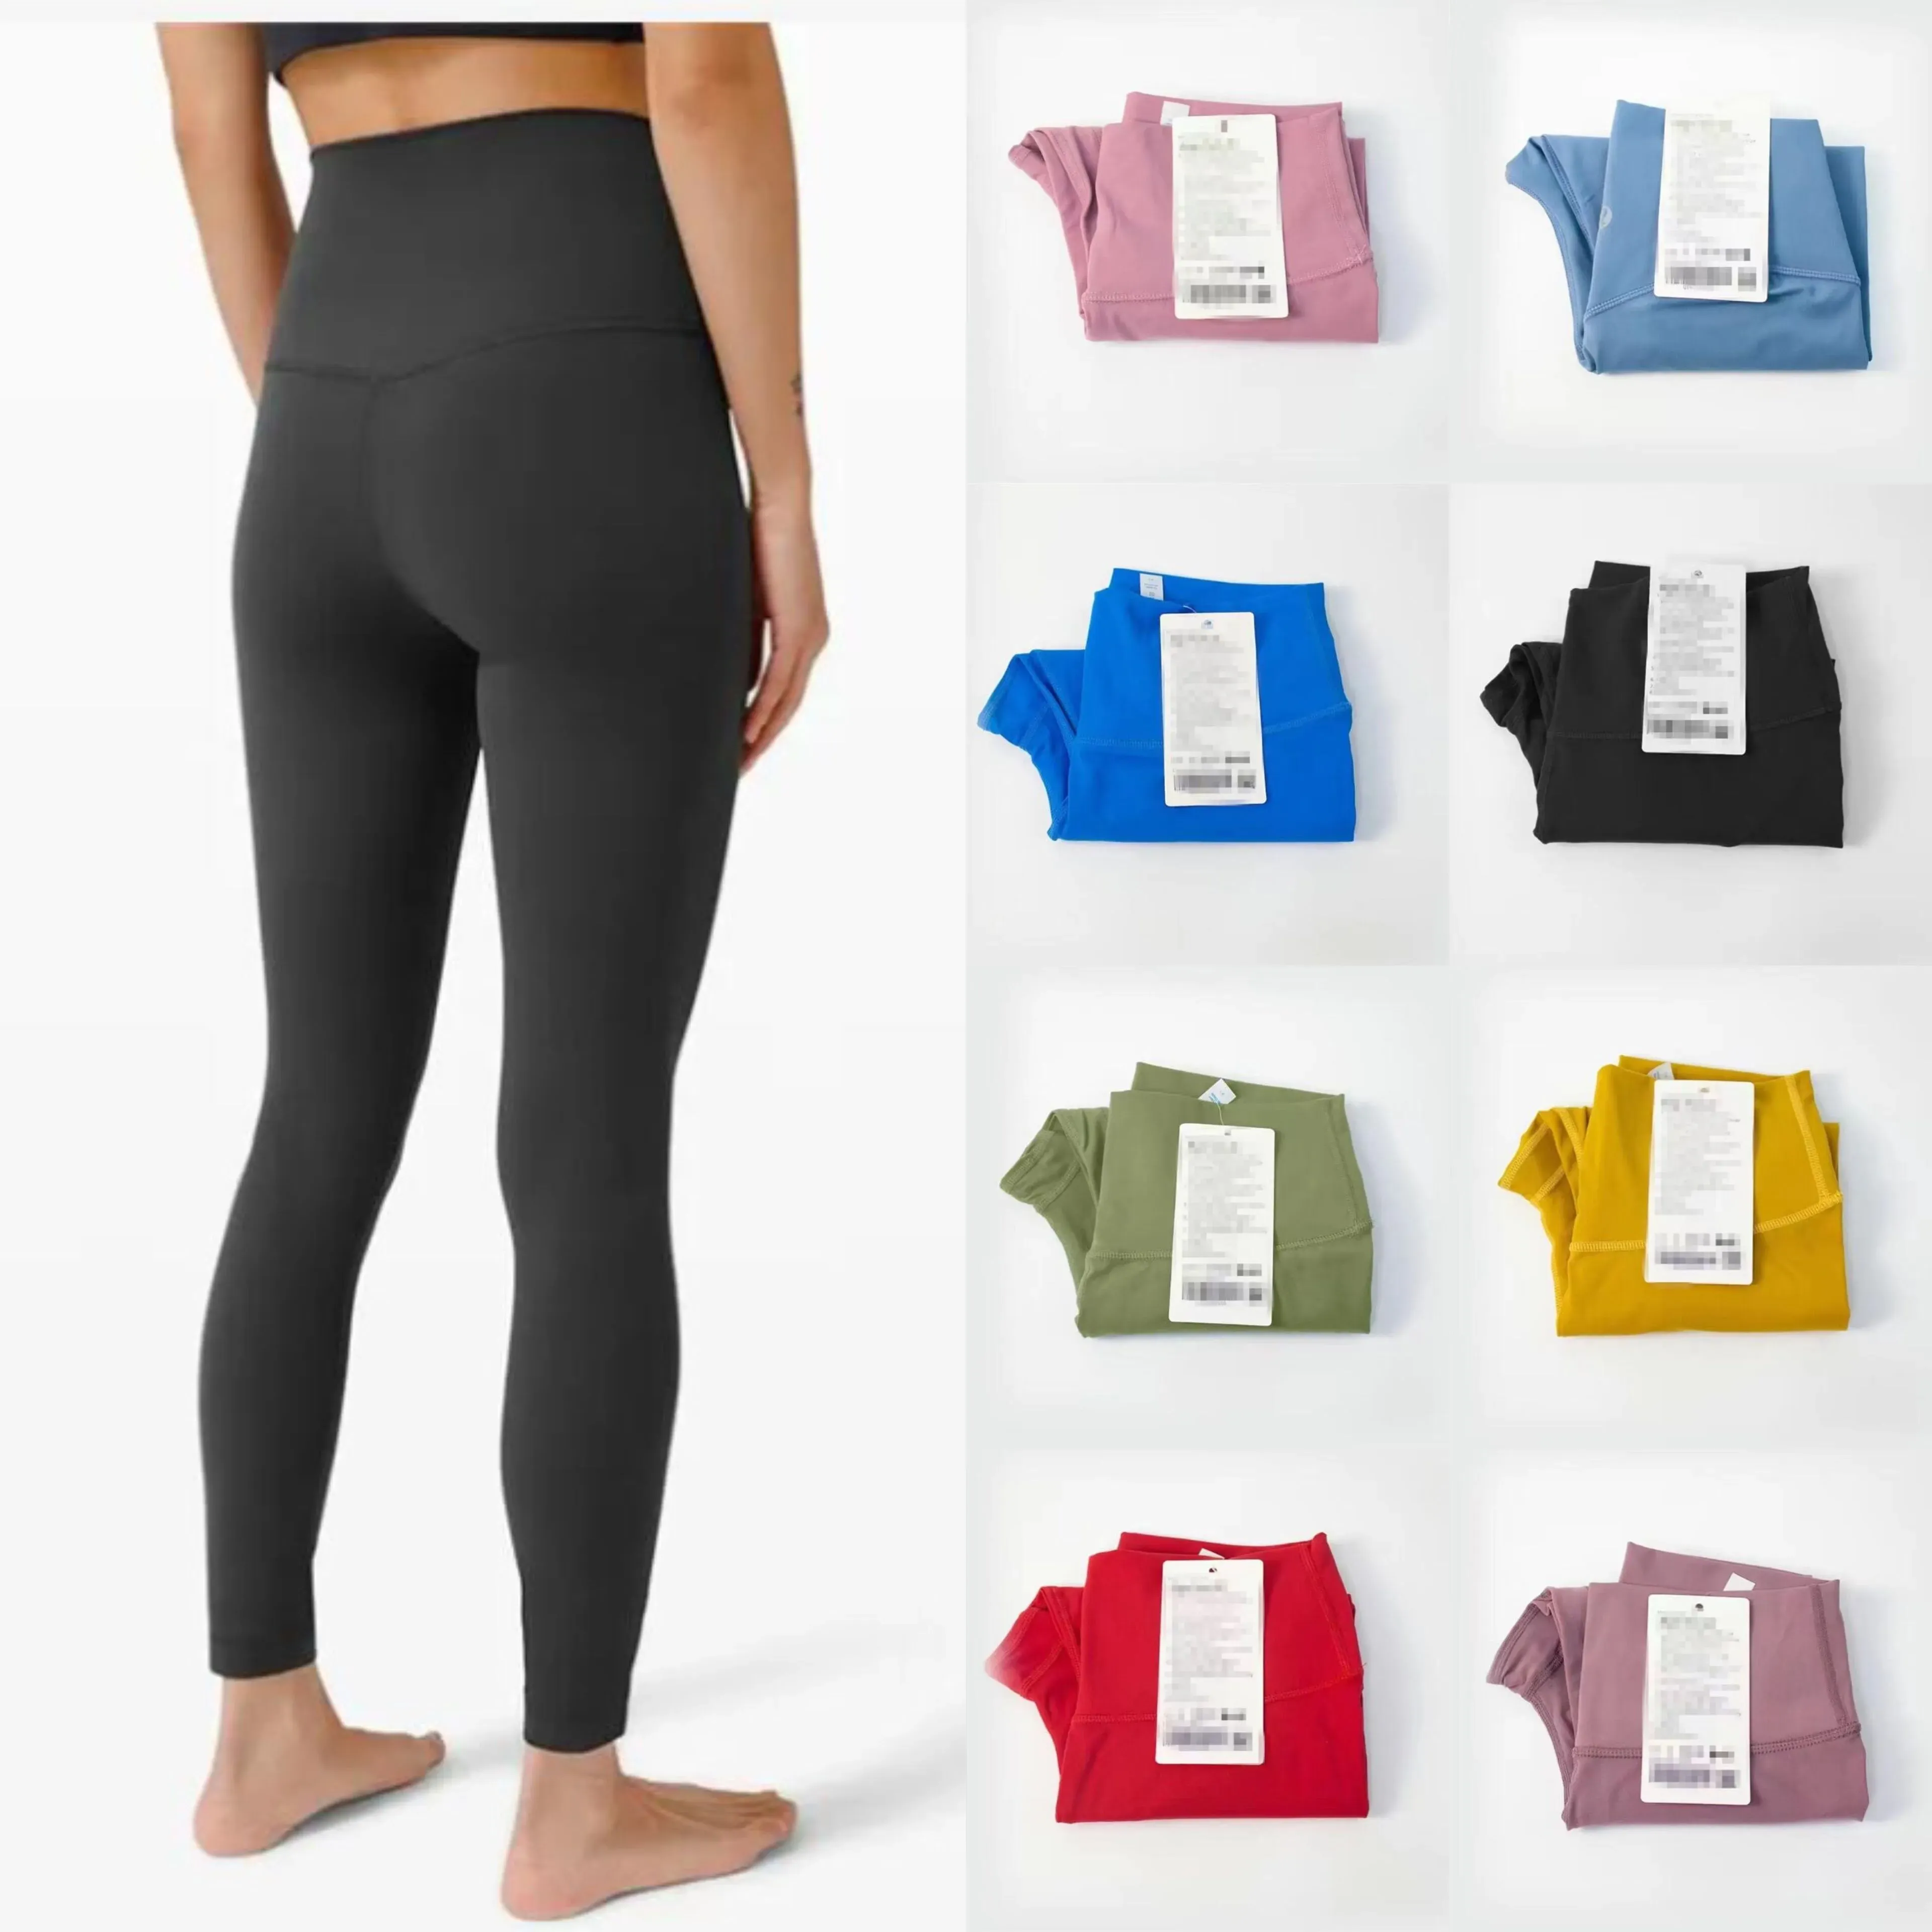 Lu Lu Lemens vêtements Yoga taille haute pantalons de yoga femmes push-up Fitness Leggings doux élastique hanche ascenseur en forme de T pantalons de sport course formation dame couleurs